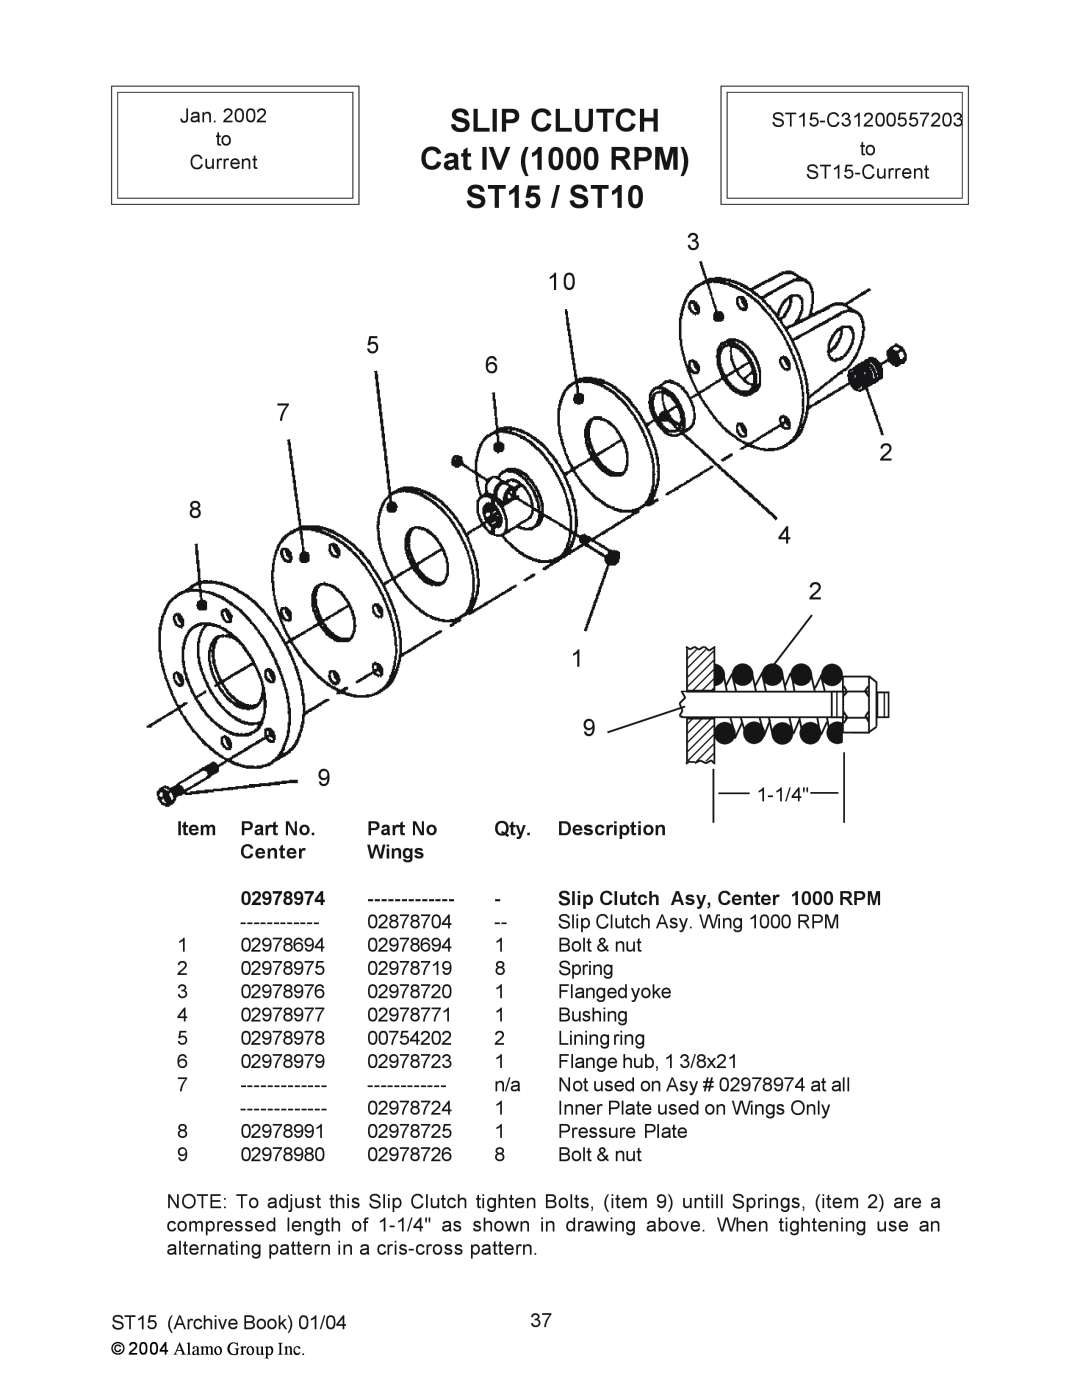 Alamo manual Cat IV 1000 RPM to, ST15 / ST10, Item Part No. Center 02978974, Description, Wings, Slip Clutch Asy, Center 